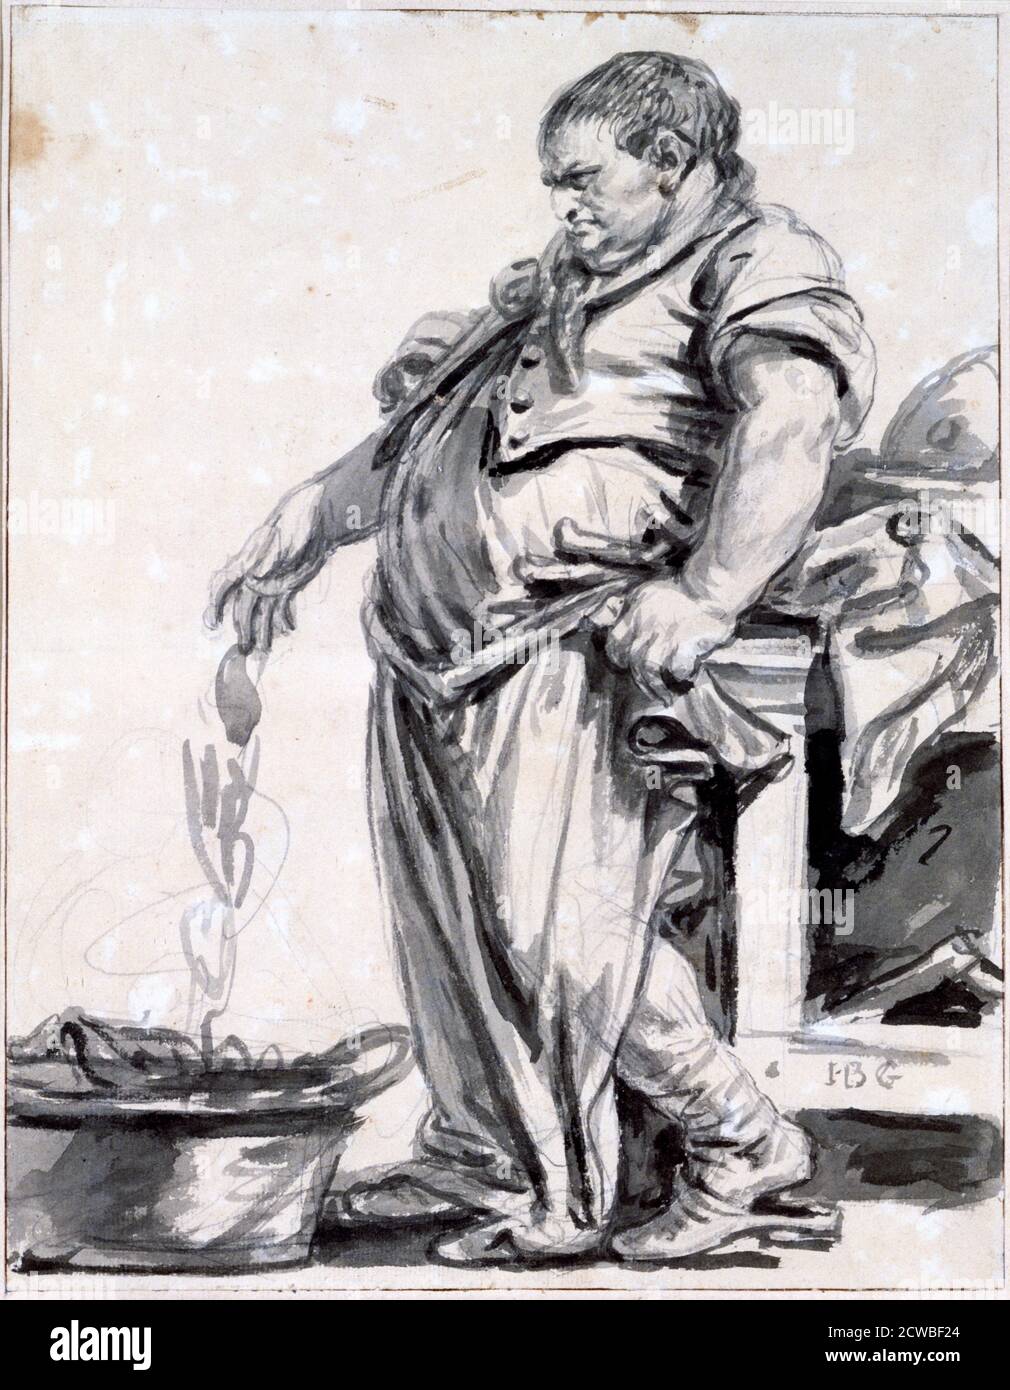 The Butcher', c1745-1805 artista: Jean-Baptiste Greuze. Jean-Baptiste Greuze (1725-1805) è stato un pittore francese di ritratti, scene di genere e pittura di storia. Foto Stock